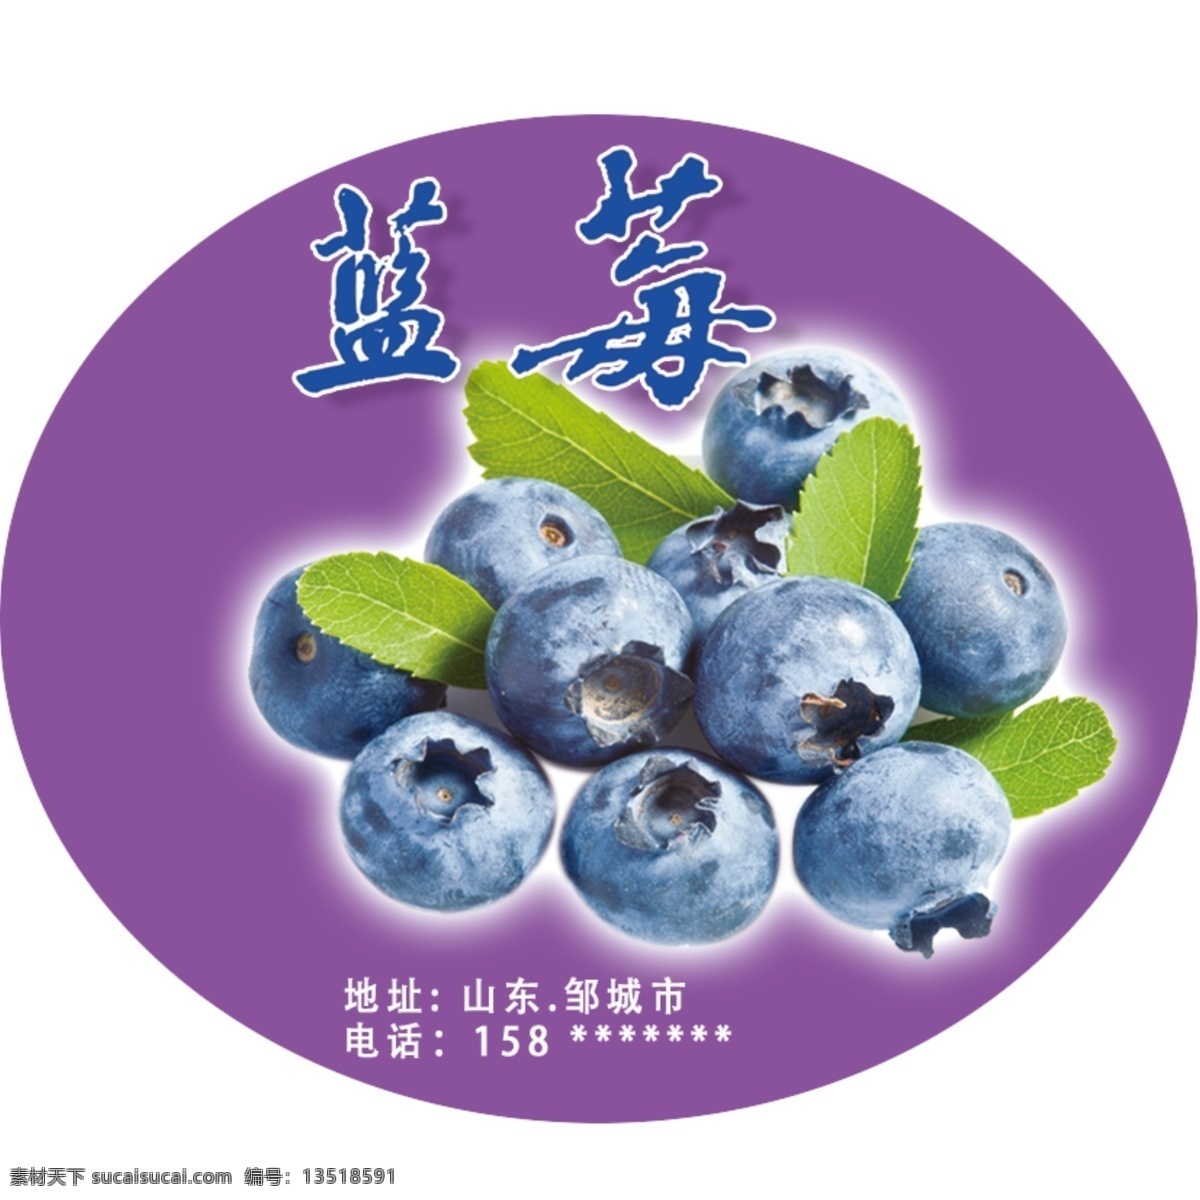 蓝莓图片 蓝莓 蓝莓不干胶 蓝莓包装贴 蓝莓标签 盒装蓝莓贴 工作平面设计